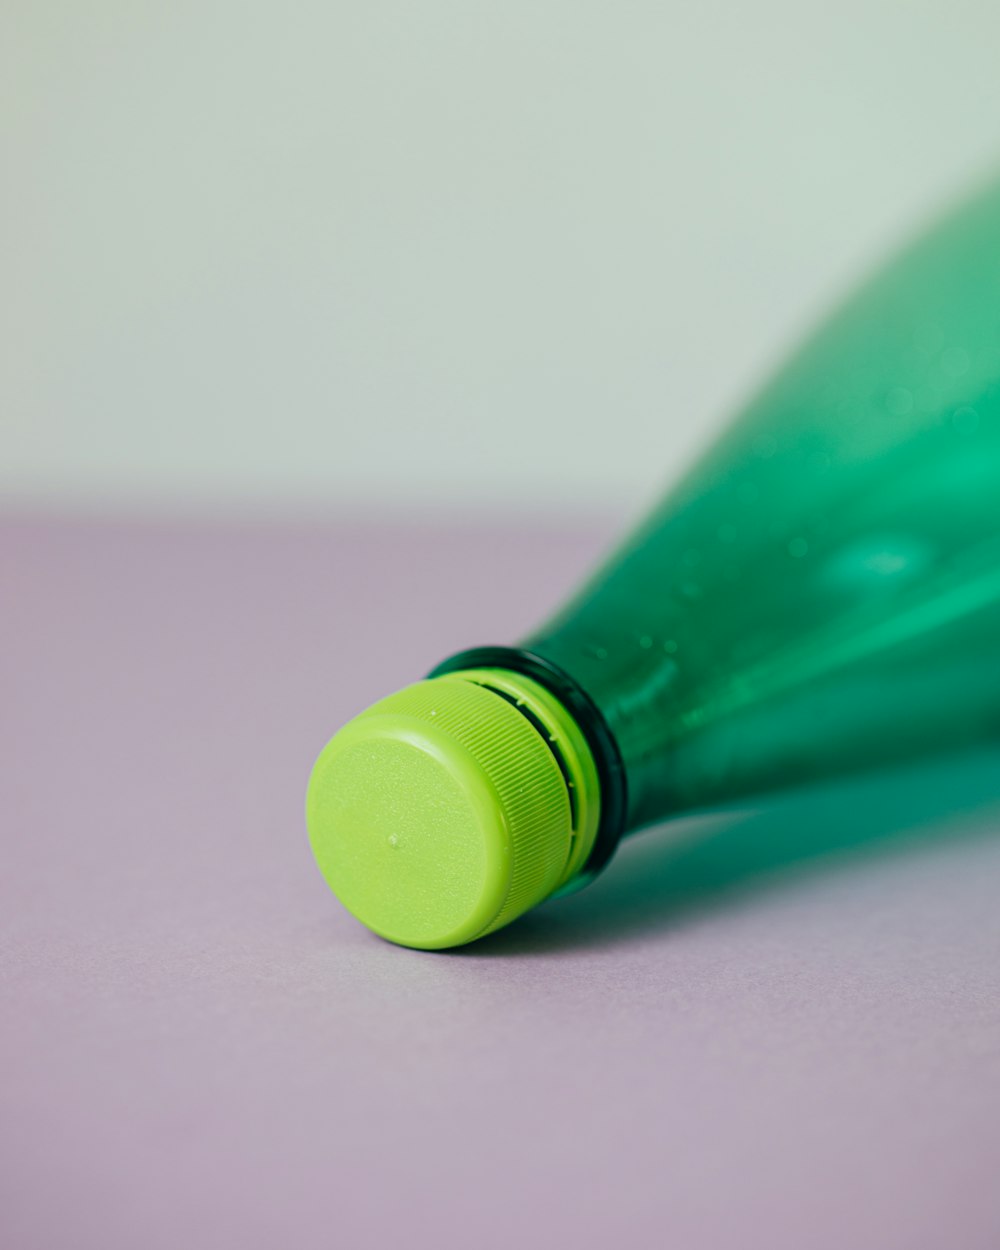 grüne Plastikflasche auf rosa Oberfläche